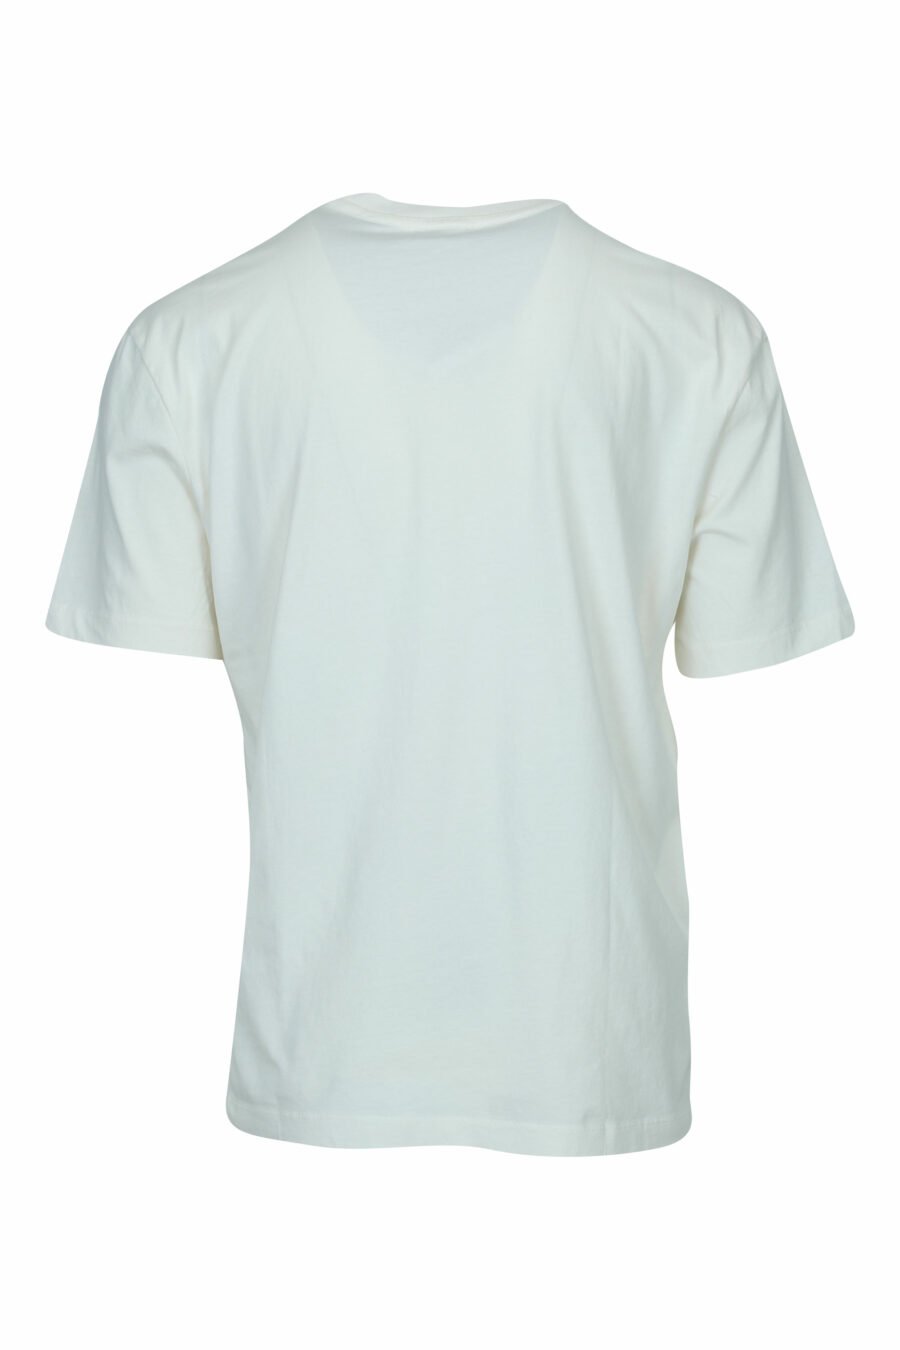 Weißes T-Shirt mit getragenem Schild maxilogo - 8058610830359 1